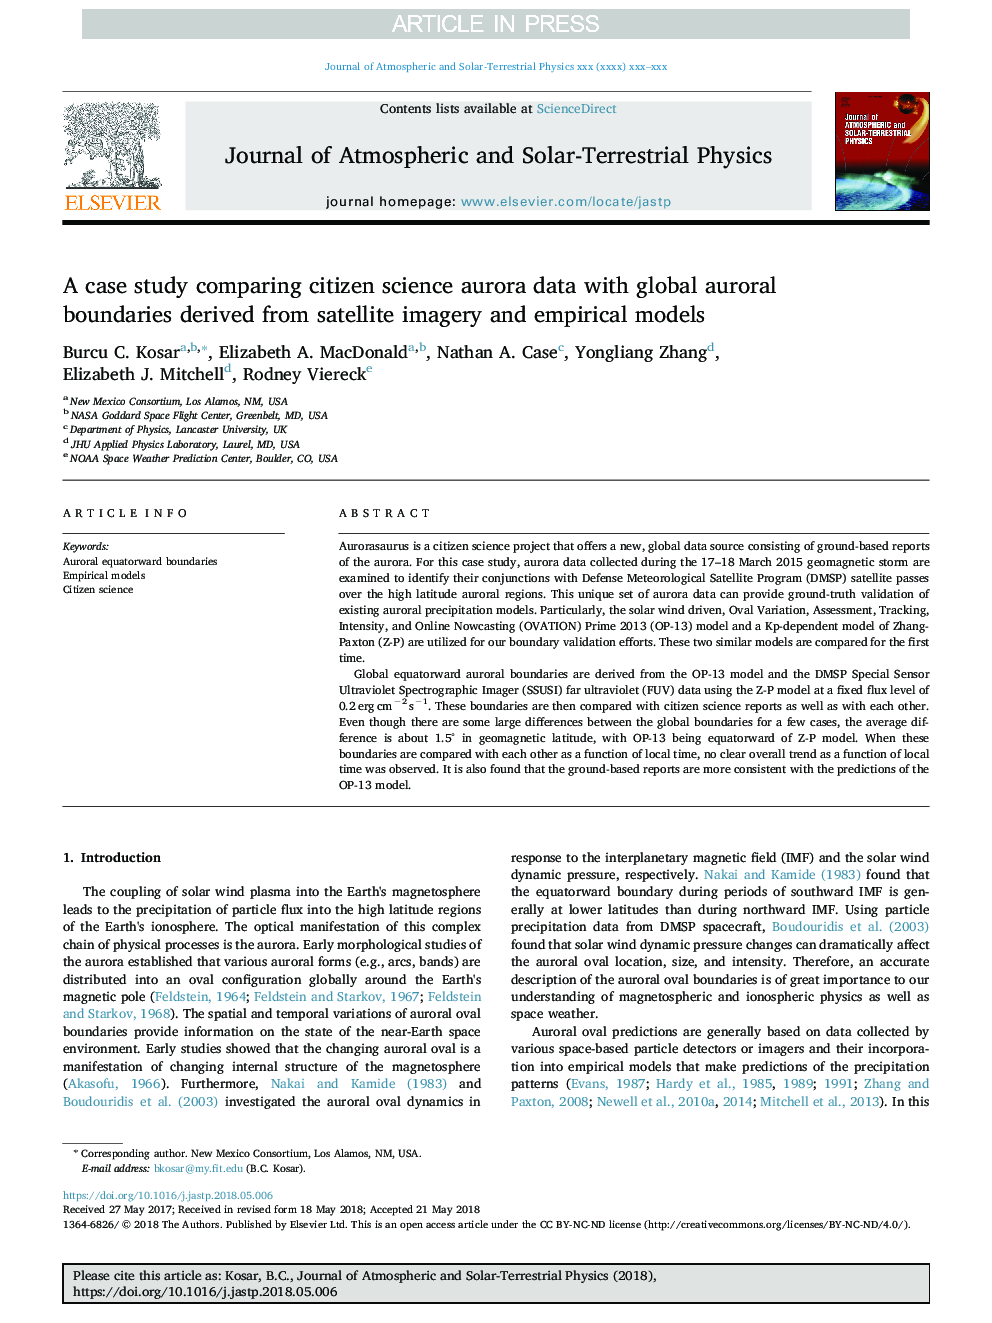 یک مطالعه موردی، مقایسه داده های آئورورا علوم شهری با مرزهای جهانی آئورو که از تصاویر ماهواره ای و مدل های تجربی حاصل می شود